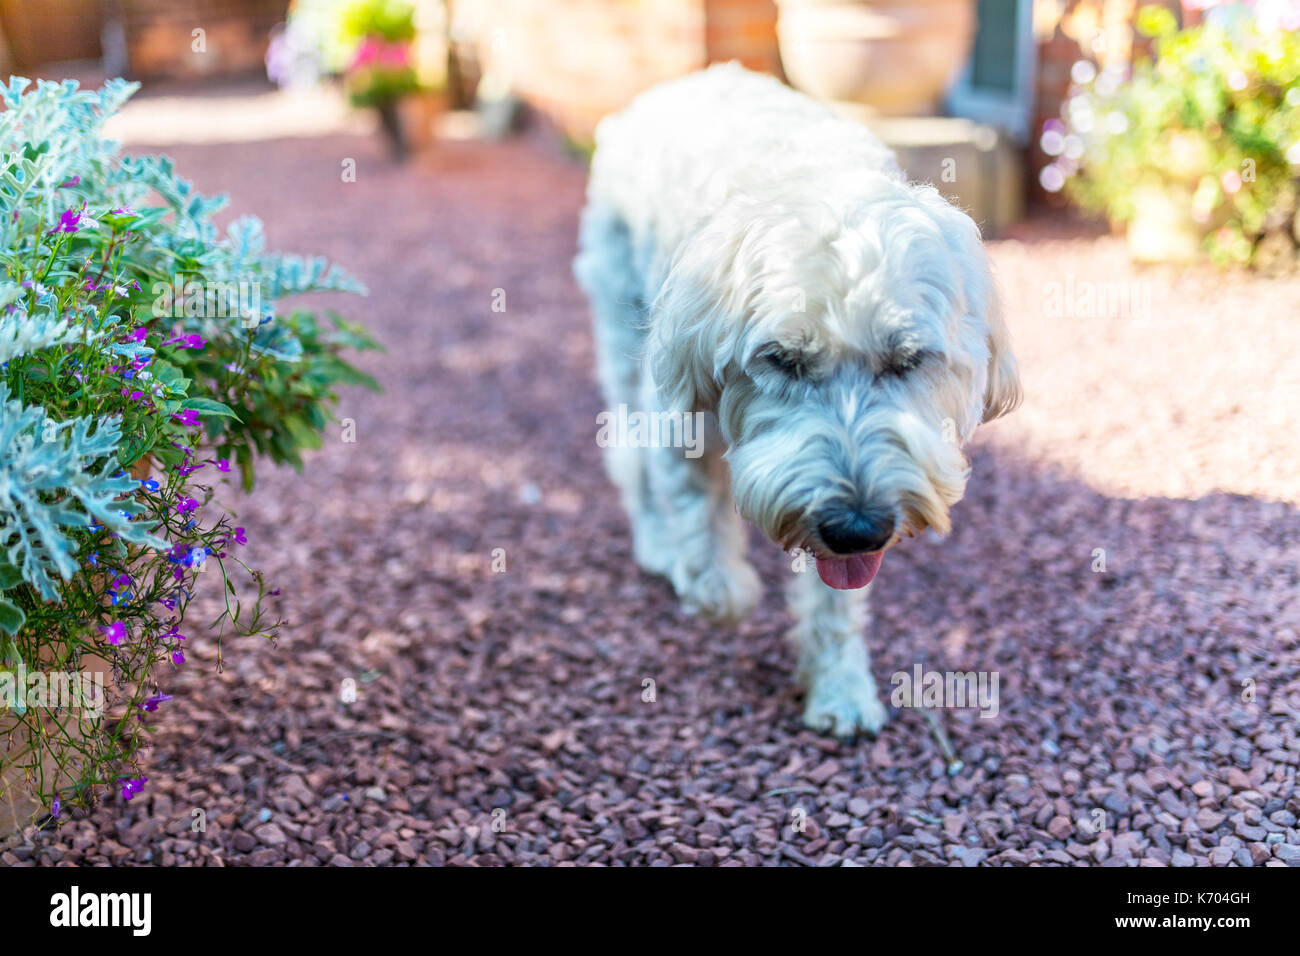 Belle et ludique aux cheveux blanc Terrier Wheaten exécute joyeusement autour d'un jardin anglais traditionnel Banque D'Images